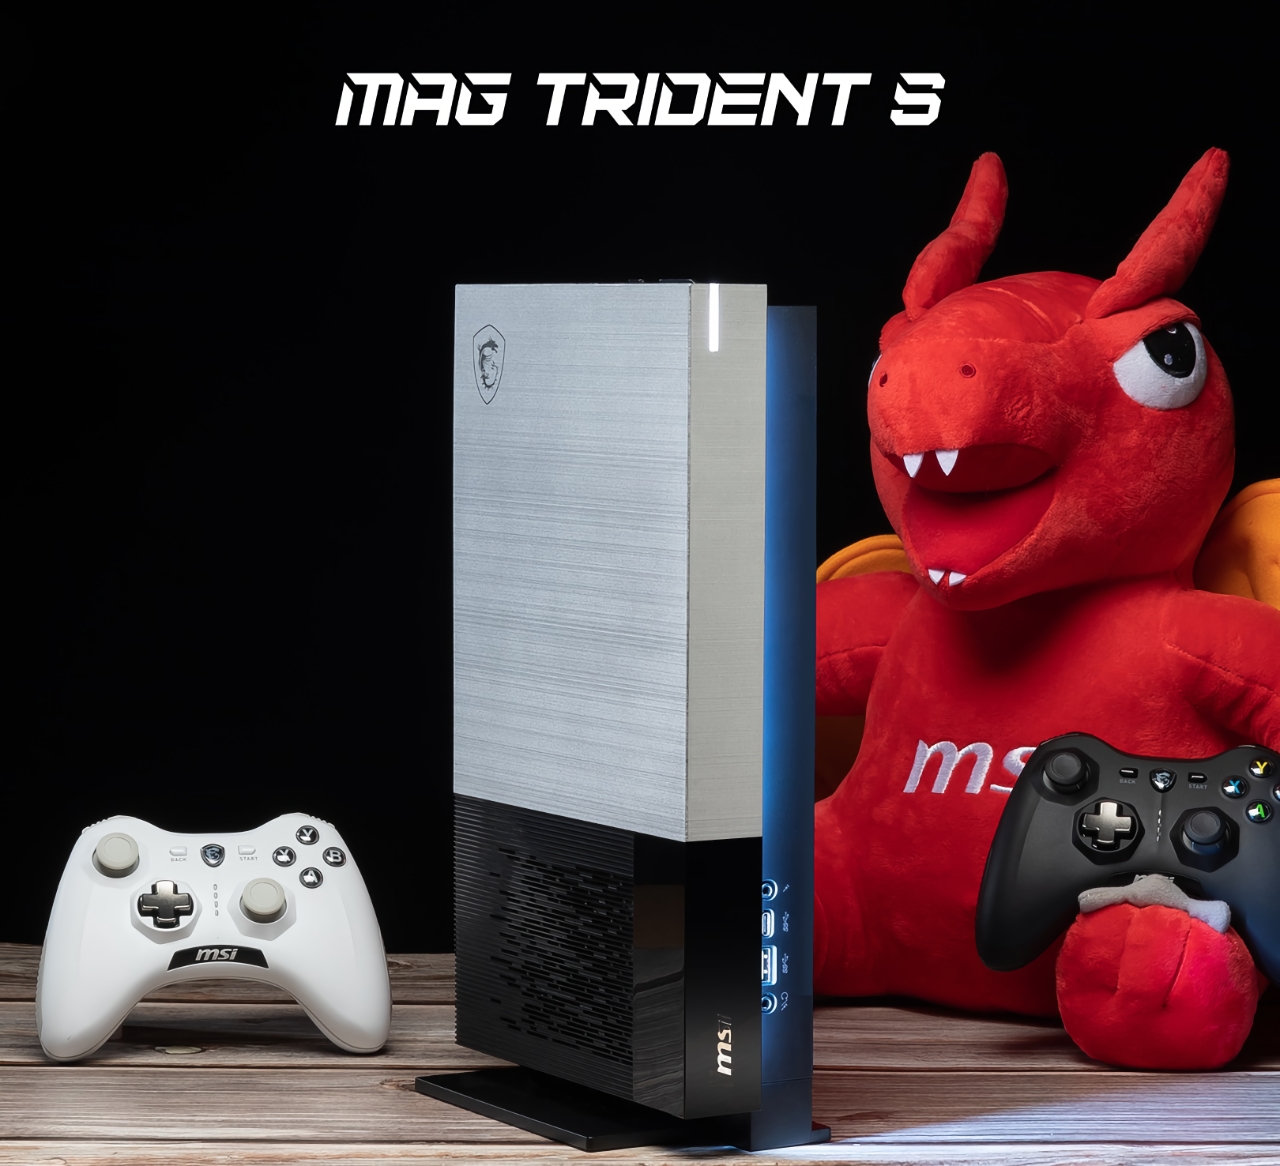 Inesperadamente: MSI lanzará la consola de juegos MAG Trident S con un procesador AMD Ryzen 7 5700G a bordo